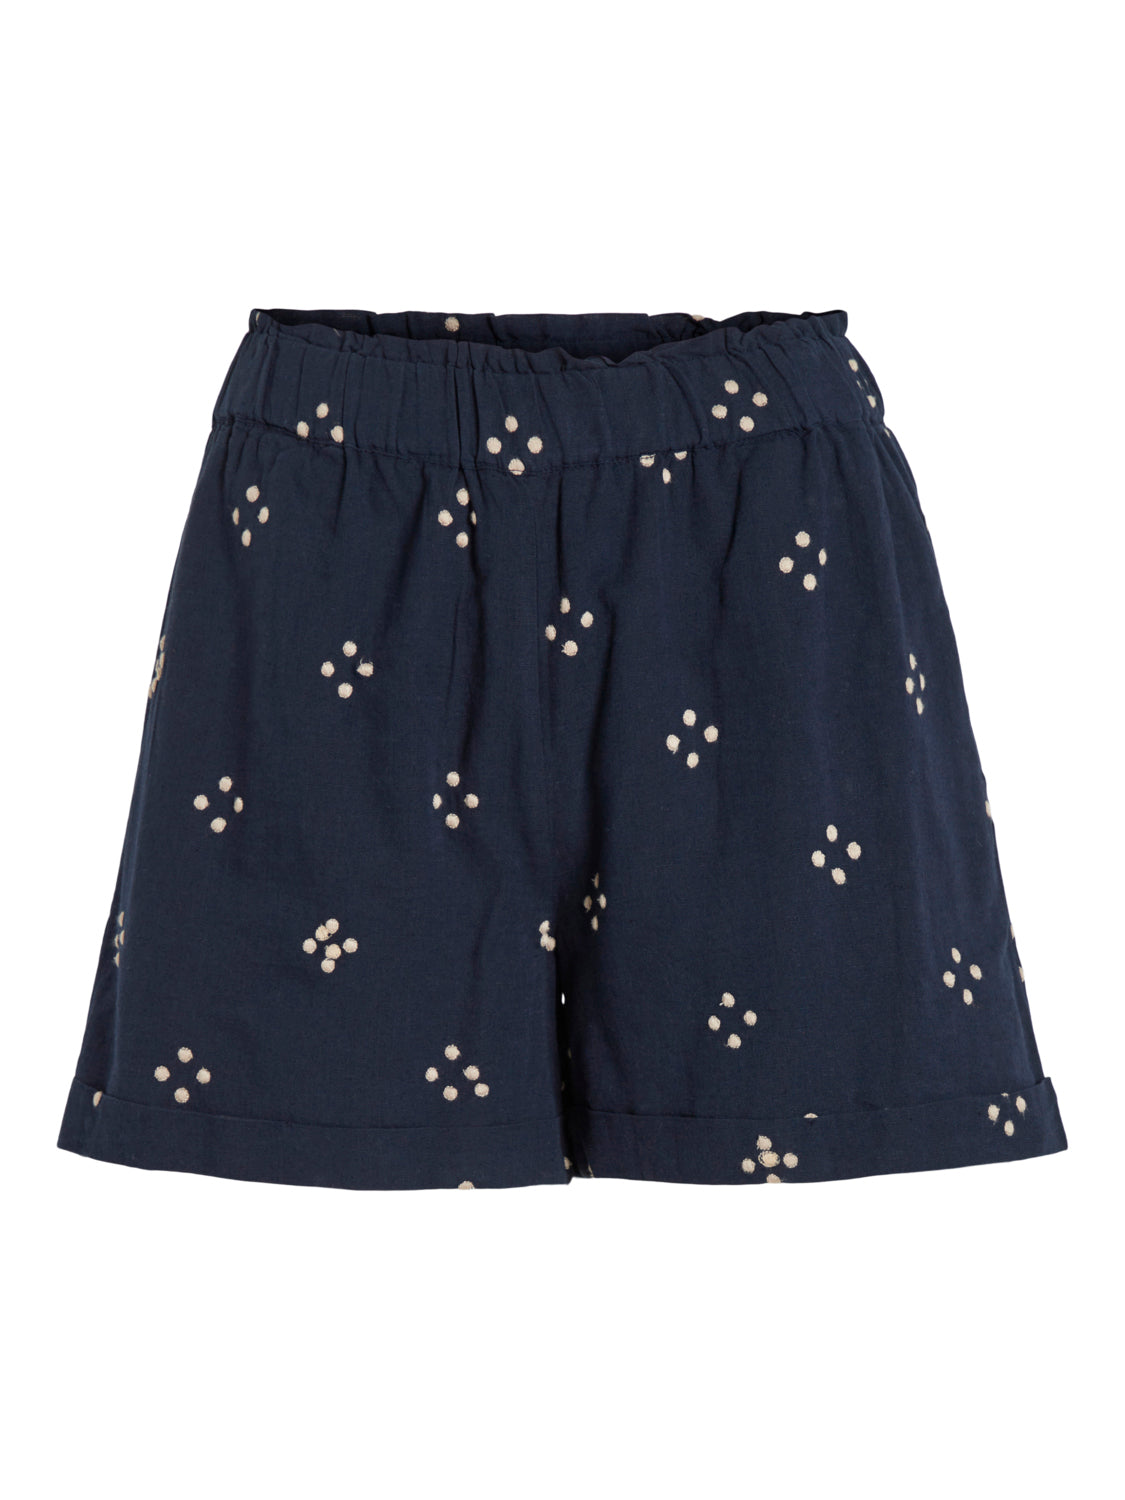 VIMARIE Shorts - Navy Blazer